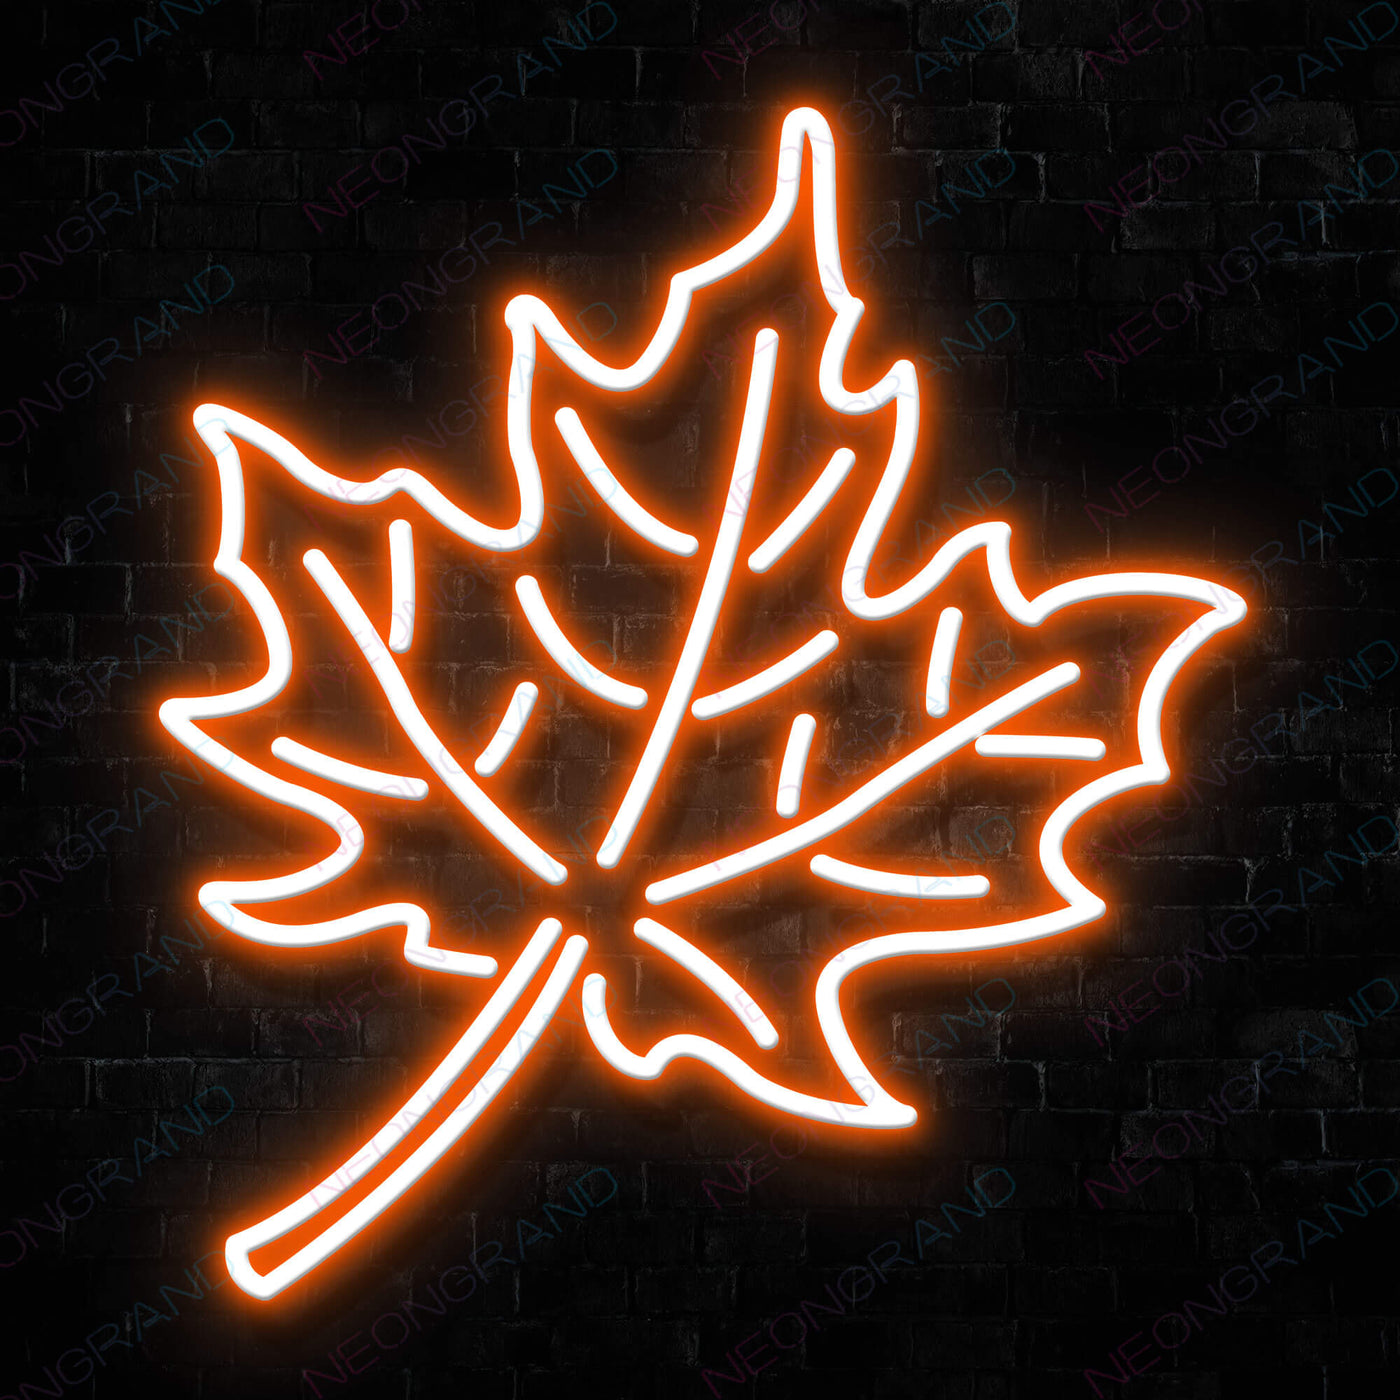 Aesthetic Neon Leaves Sign Led Light orange